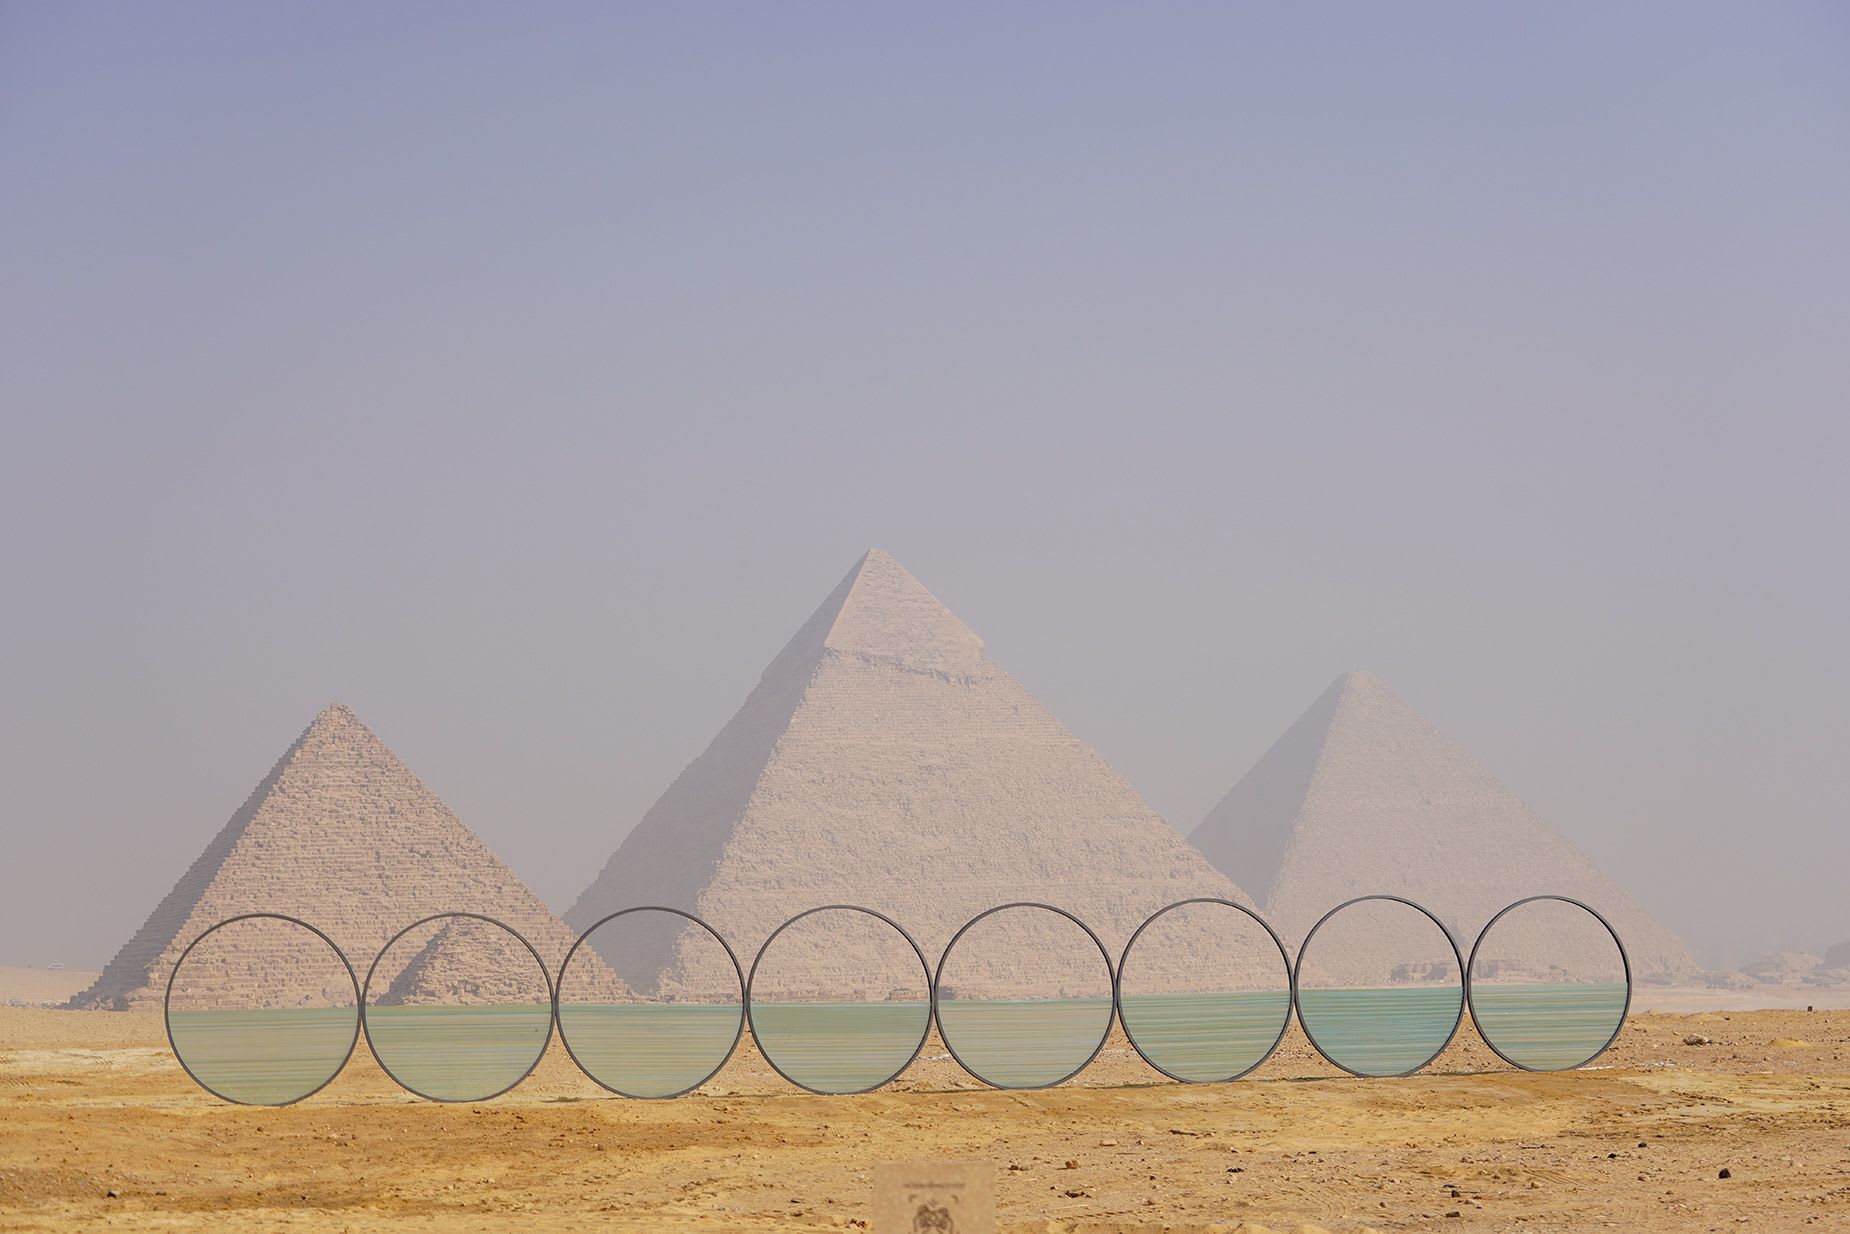 إحداها تجعل الأهرامات تبدو وكأنها تطفو.. تستضيف أشهر معالم مصر أعمالاً فنية مذهلة